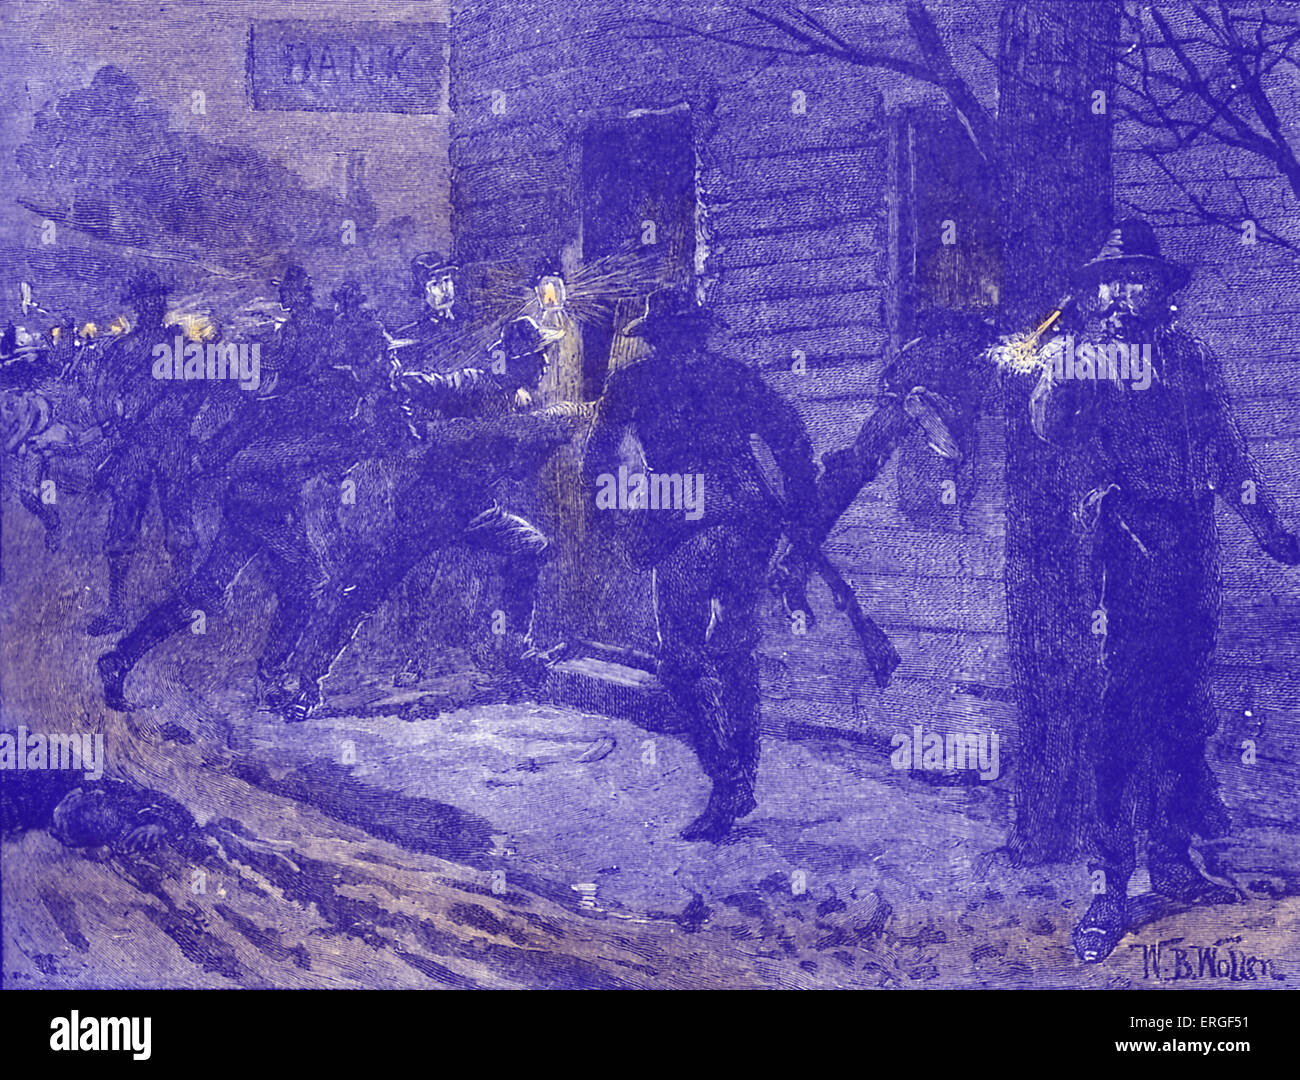 Guerra Civil americana: St Albans Raid. Raid confederado en St.Albans, Vermont, el 19 de octubre de 1864. La acción más septentrional de la guerra. Foto de stock